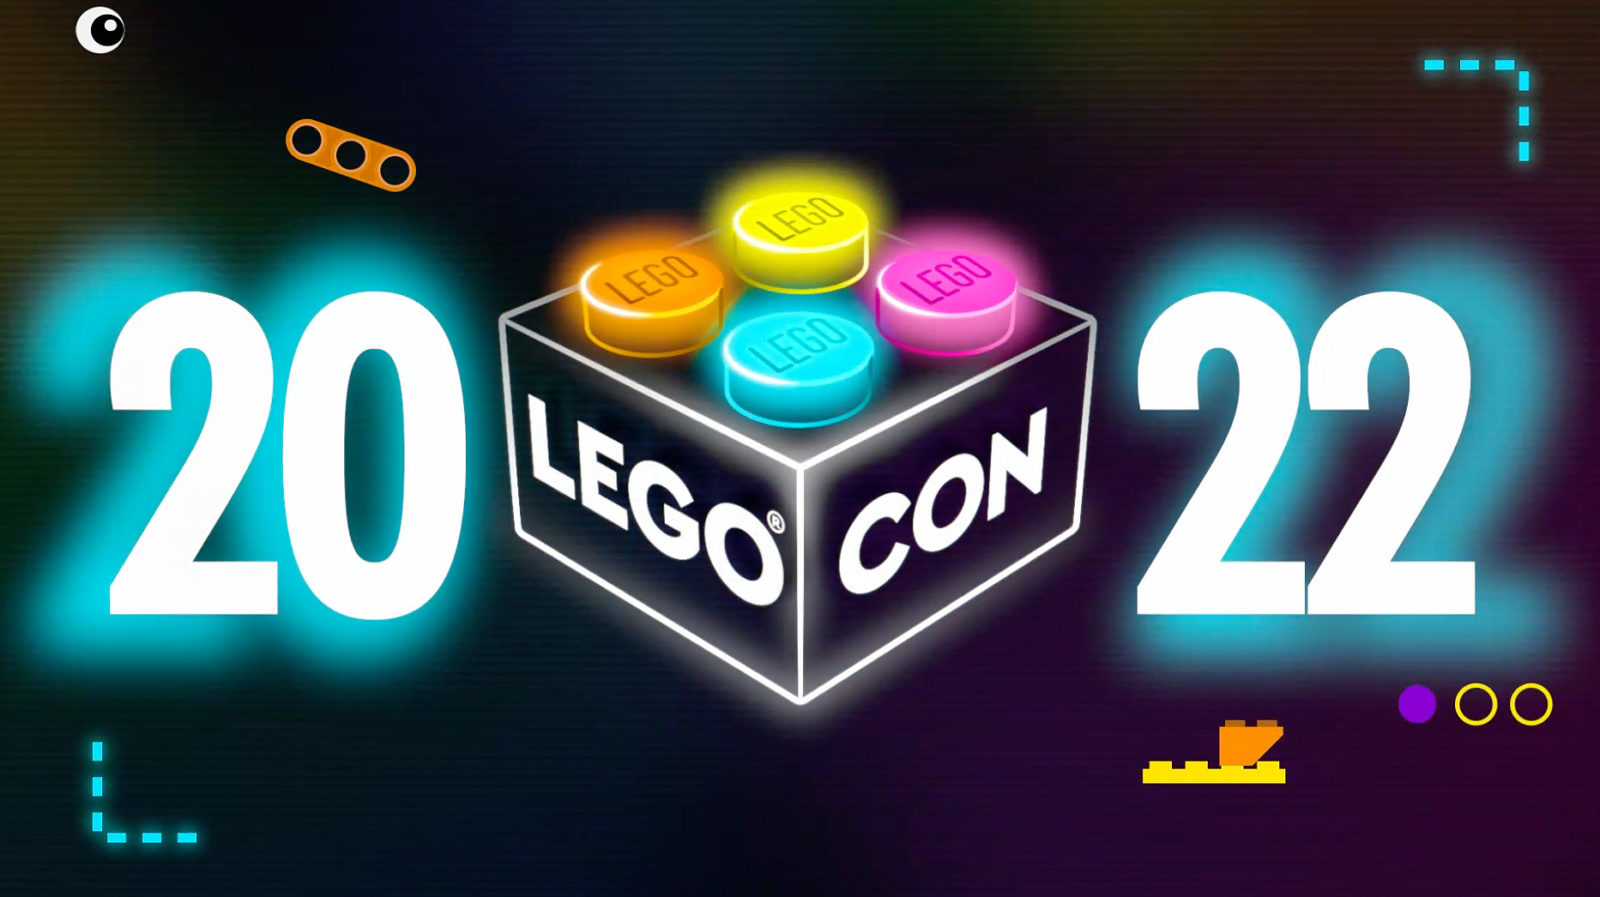 LEGO CON 2022：LEGOOnlineConventionが18年2022月XNUMX日に開催されます